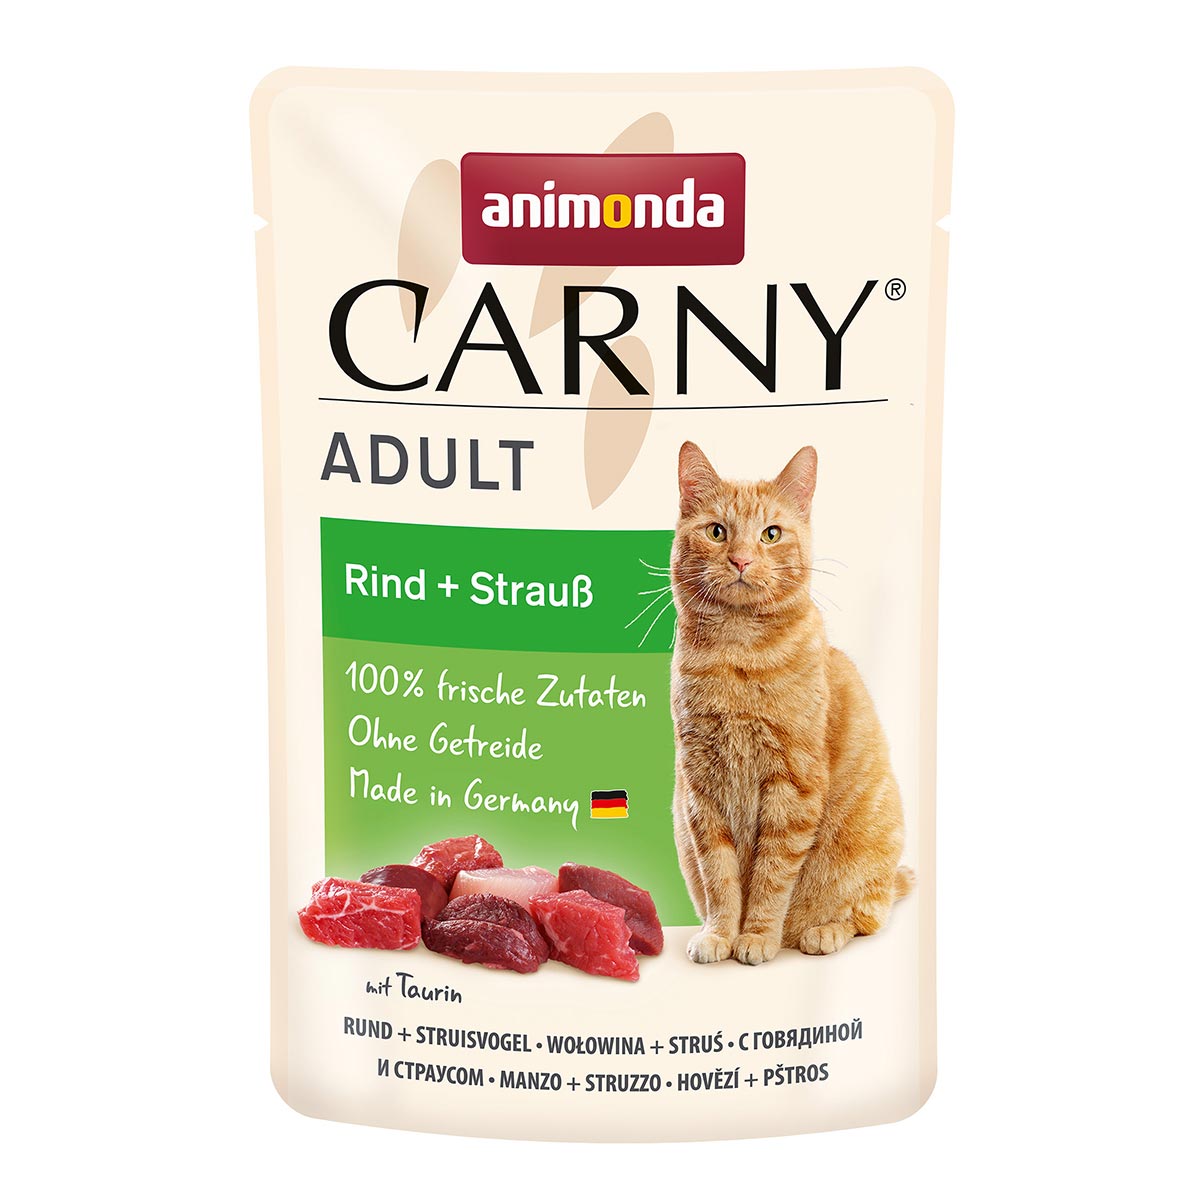 animonda Carny Adult Rind + Strauß 24x85g